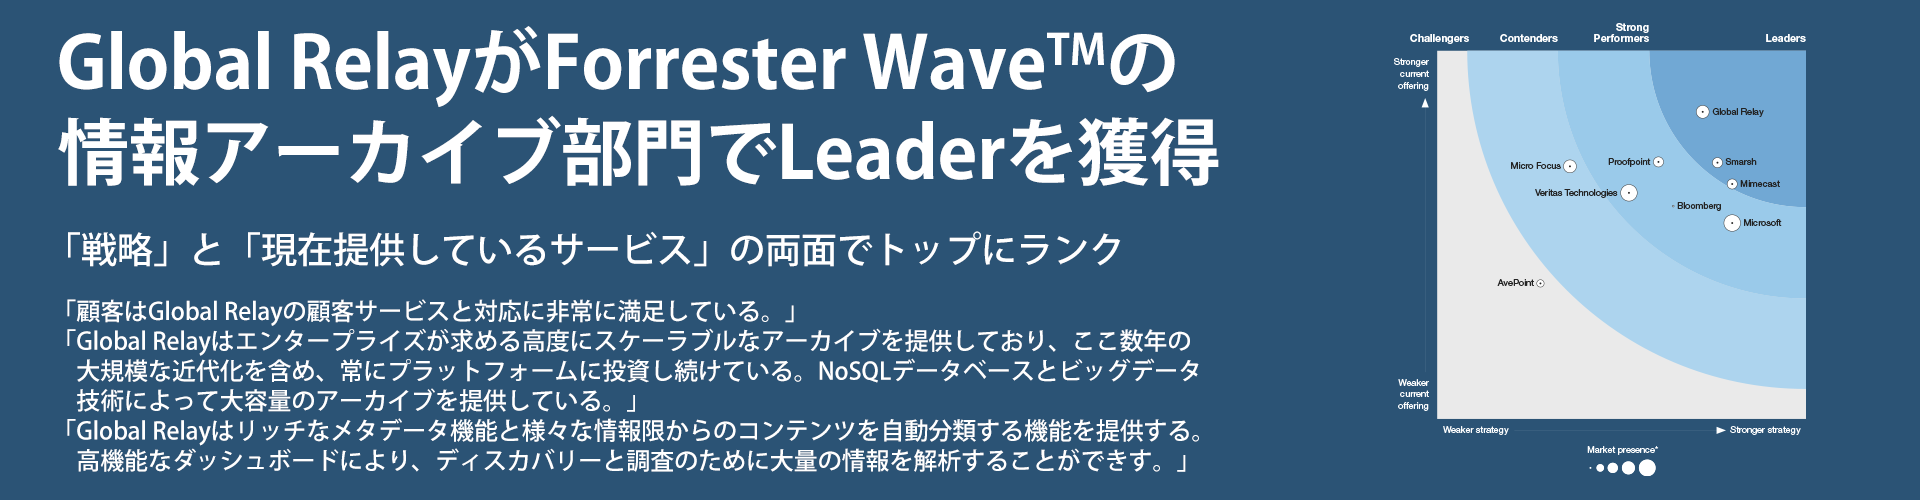 Global Relay Forrester Wave Leader